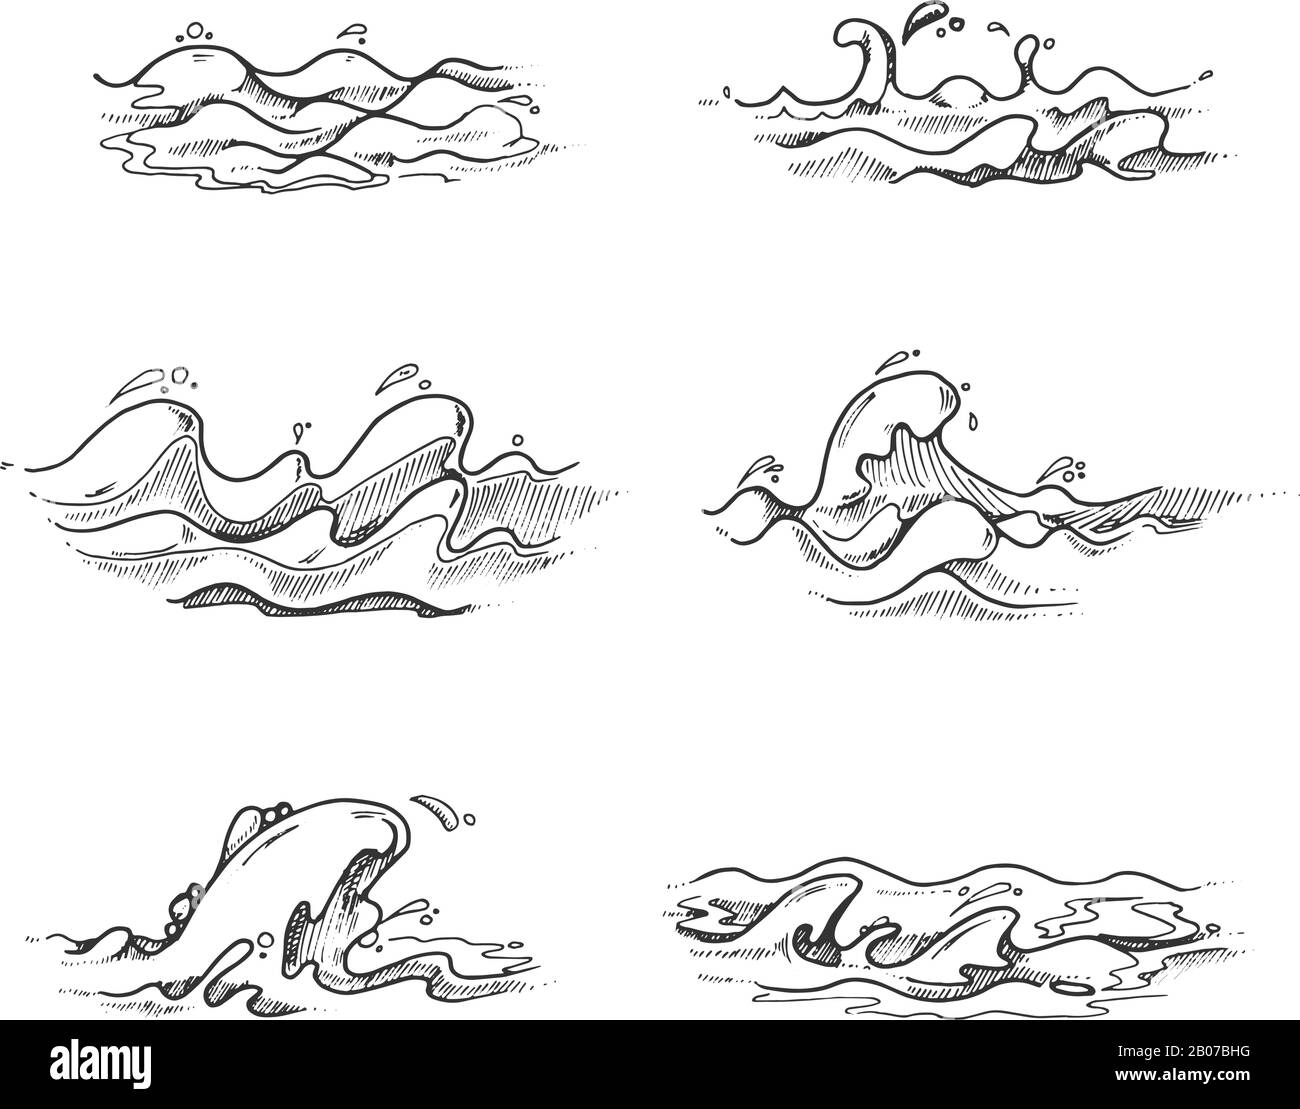 Meer- und Ozeanwellen, Wasserspritzer in Vektorhand gezeichnet, Skizze, Doodle-Stil. Abbildung: Gewellte Bewegung des Seesturms Stock Vektor